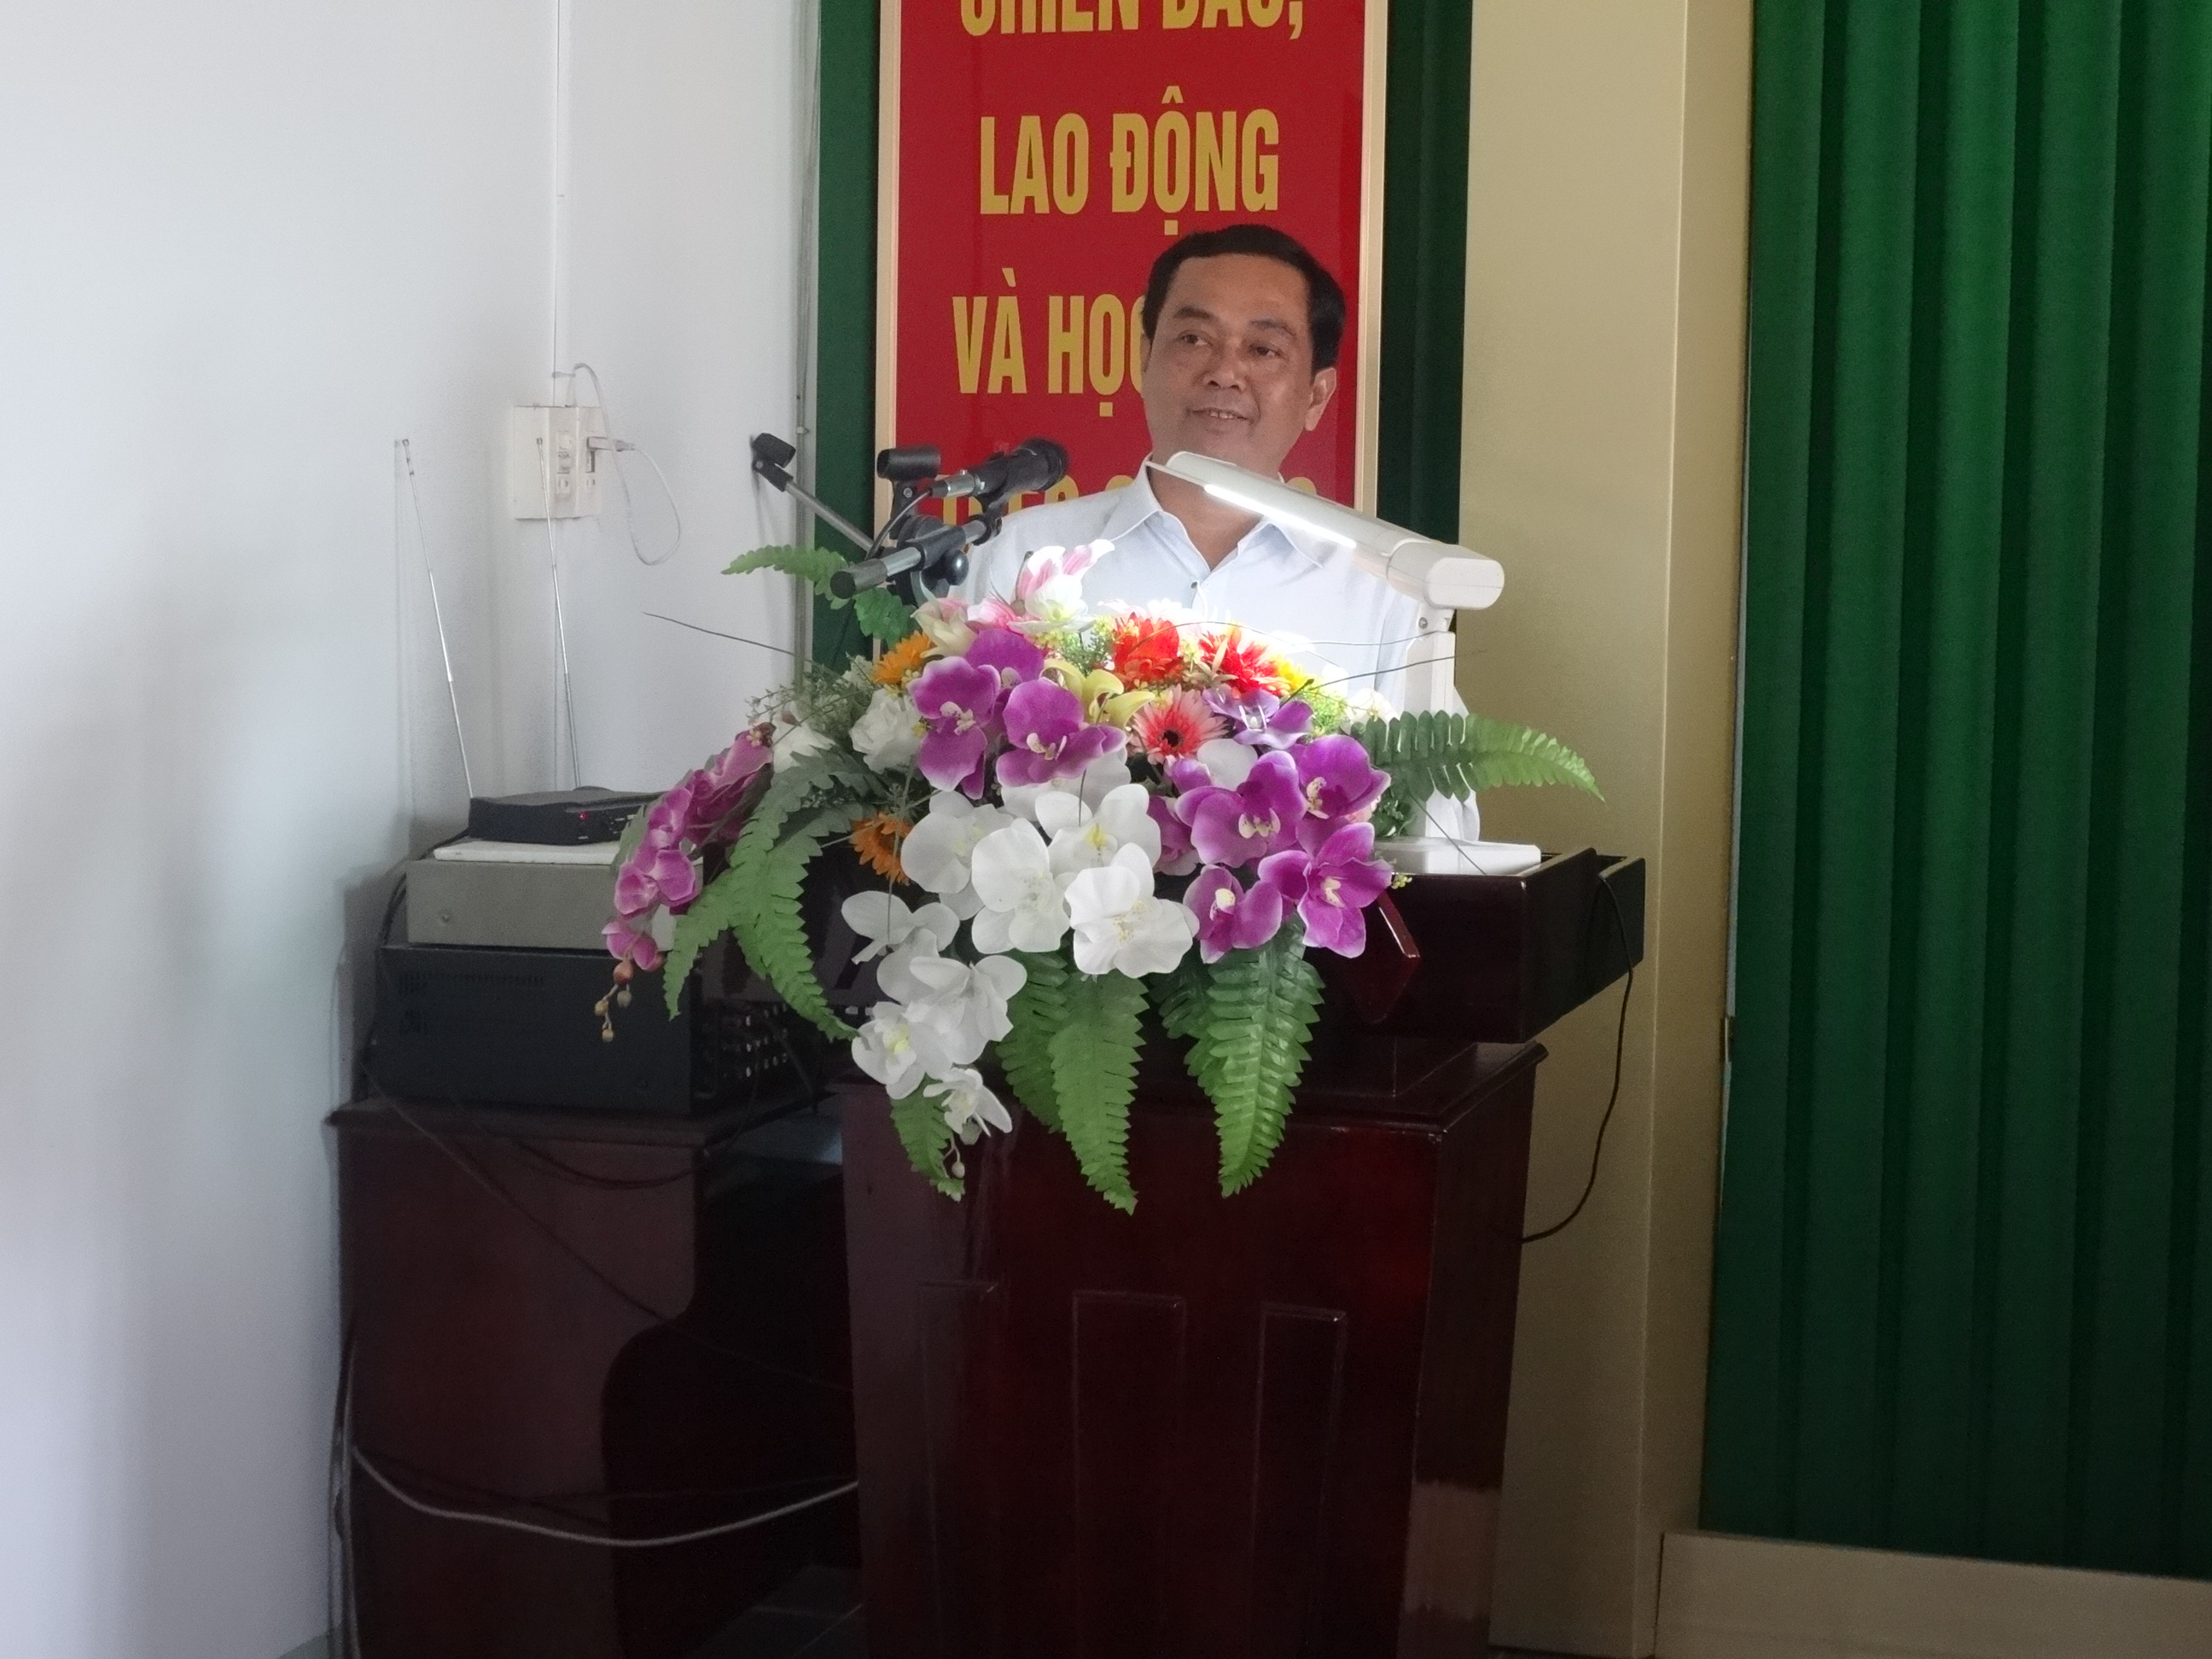 Cục Thi hành án dân sự tỉnh Trà Vinh tổ chức Lễ công bố Quyết định bổ nhiệm Phó Chi cục trưởng và điều động cán bộ, công chức.